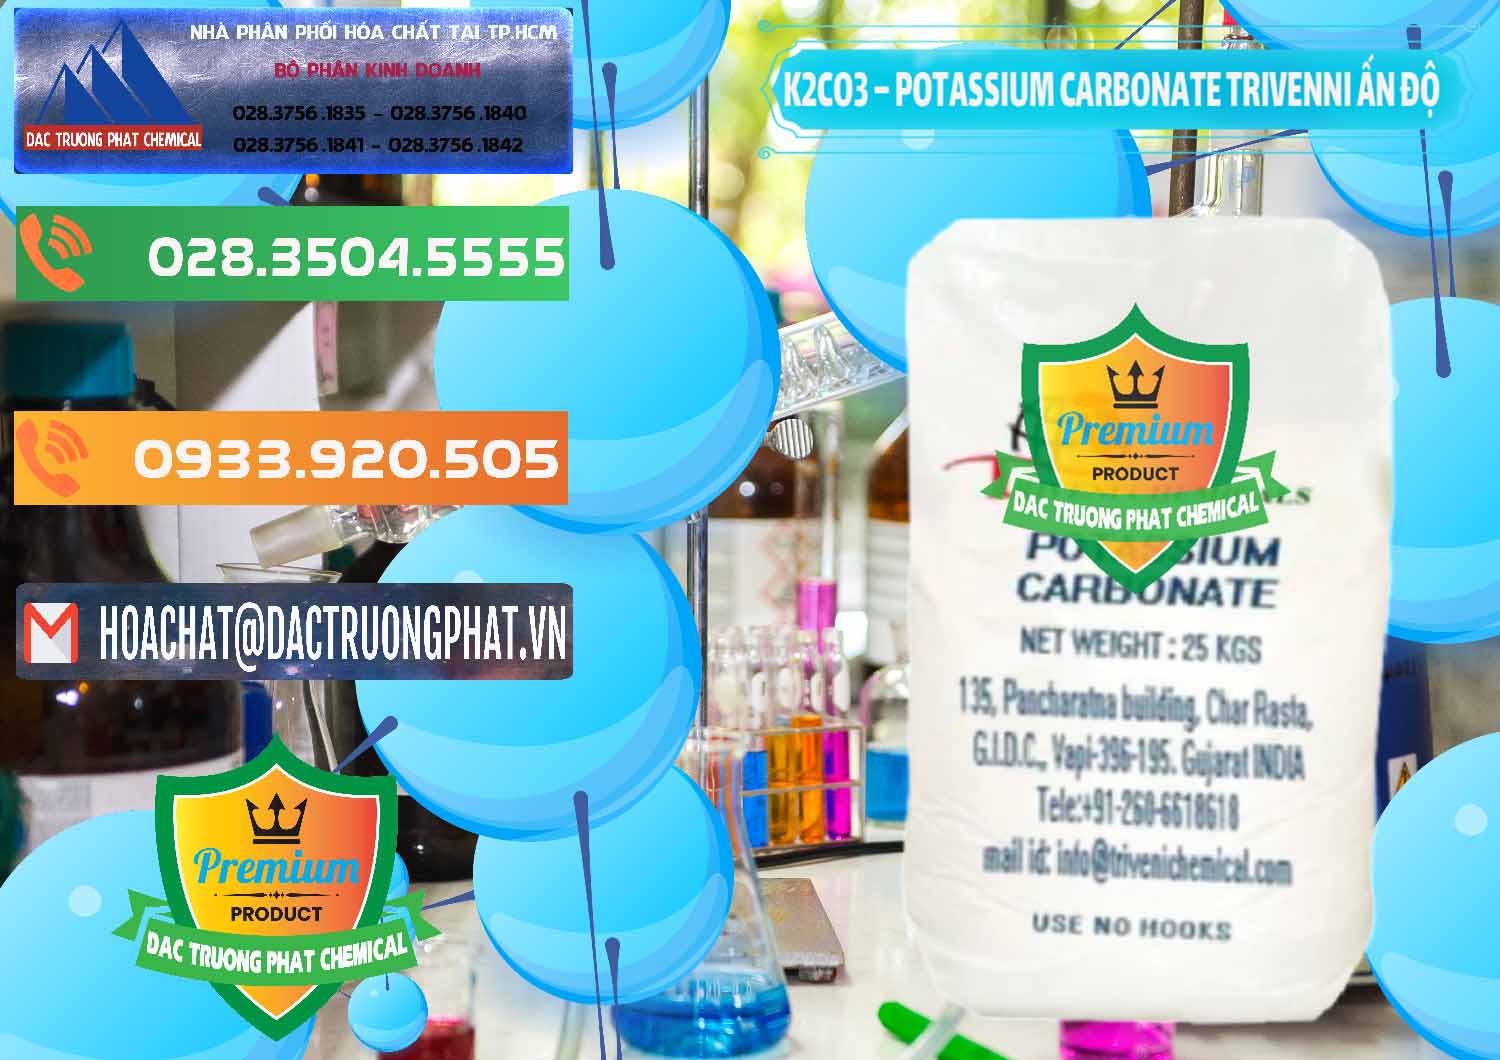 Nơi cung cấp - bán K2Co3 – Potassium Carbonate Trivenni Ấn Độ India - 0473 - Công ty bán và cung cấp hóa chất tại TP.HCM - hoachatxulynuoc.com.vn